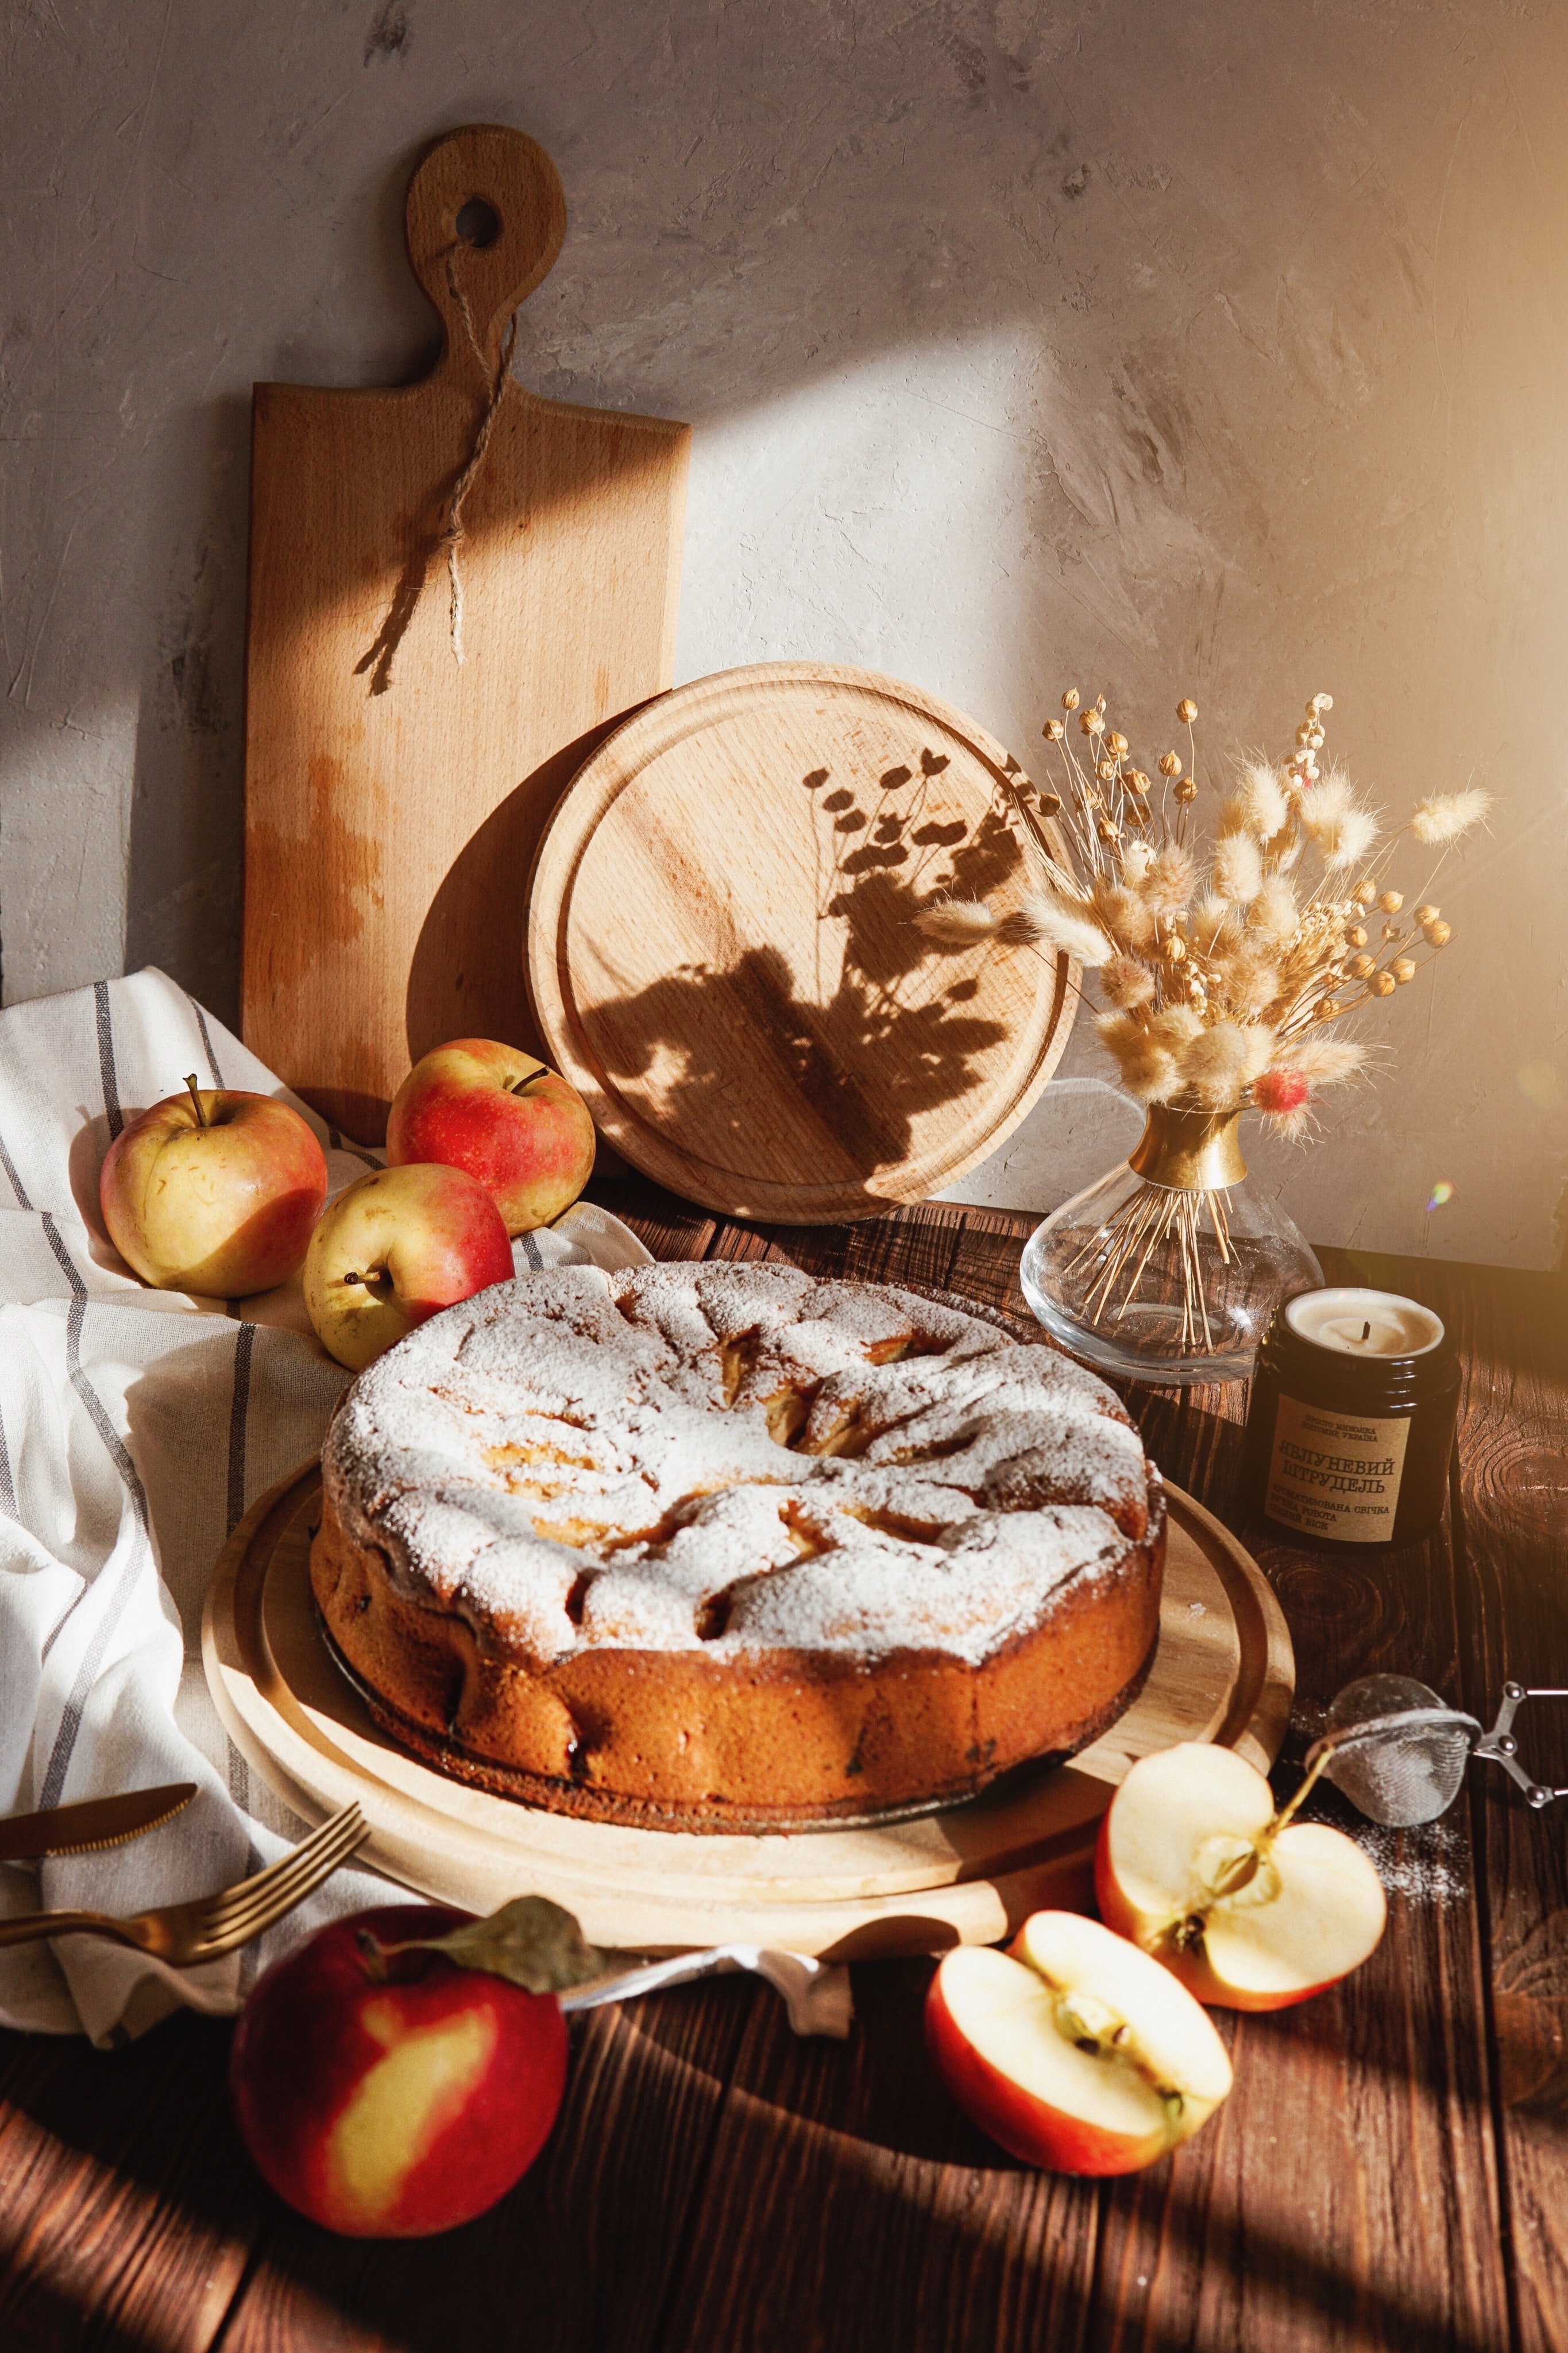 ¿Cómo se hace una tarta de manzana? Las 5 recetas más fáciles y exquisitas